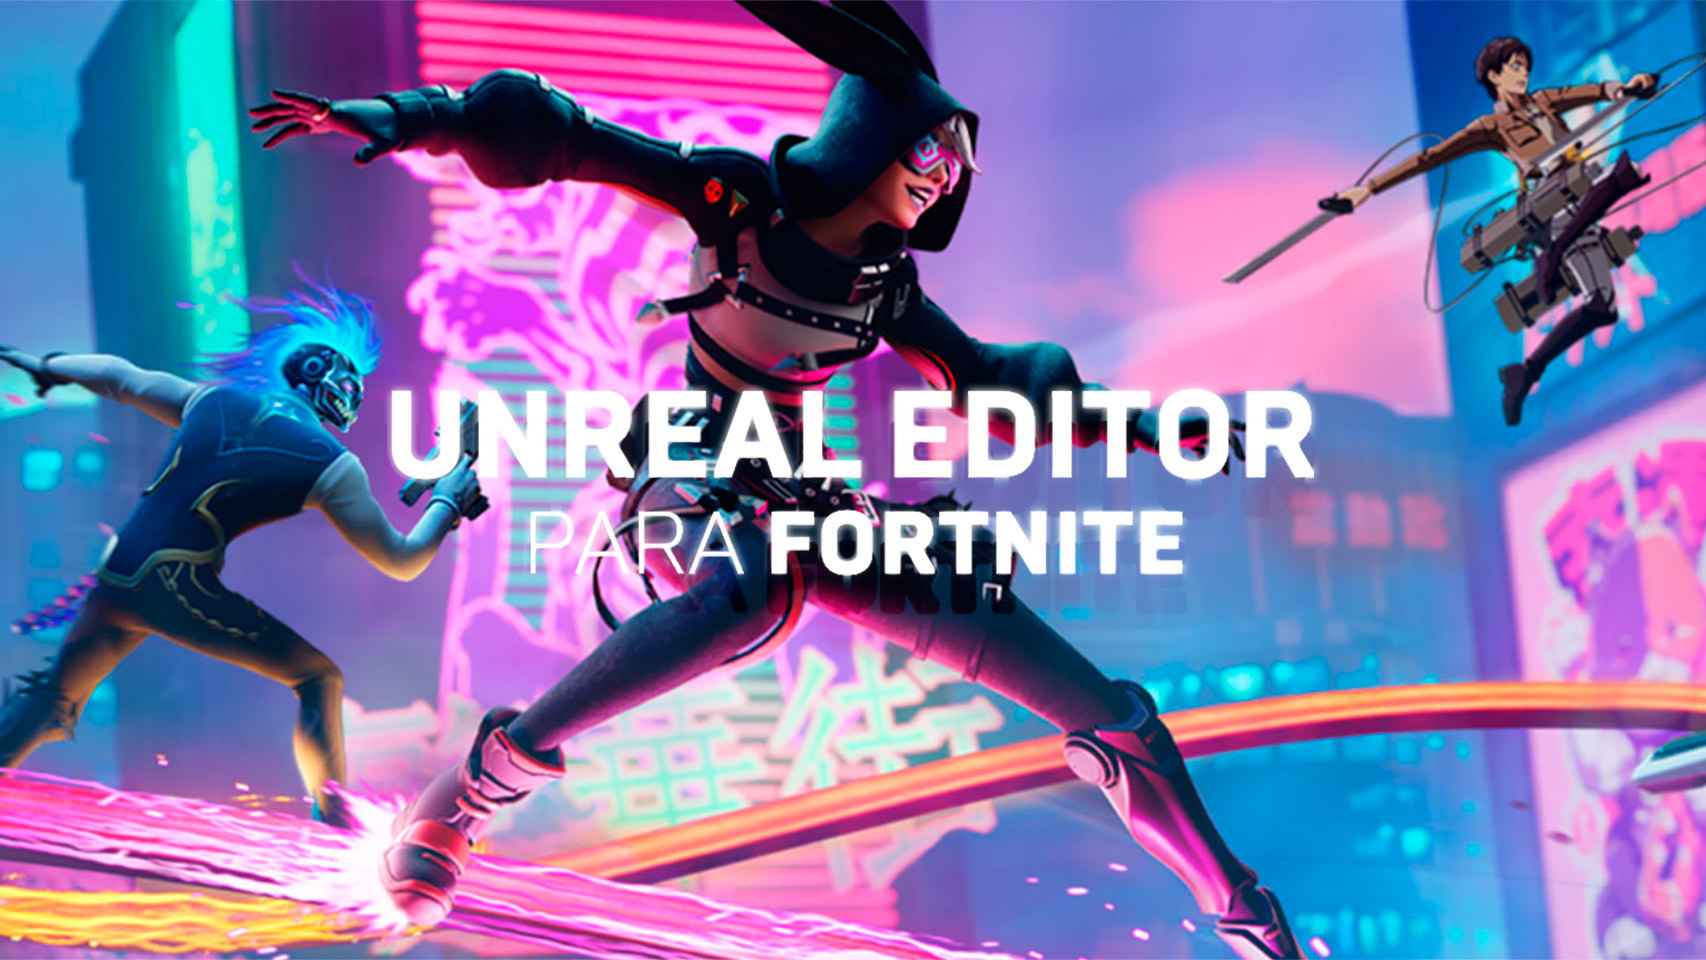 Fortnite abre las puertas al editor de Unreal para llevar a otro límite su battle royale